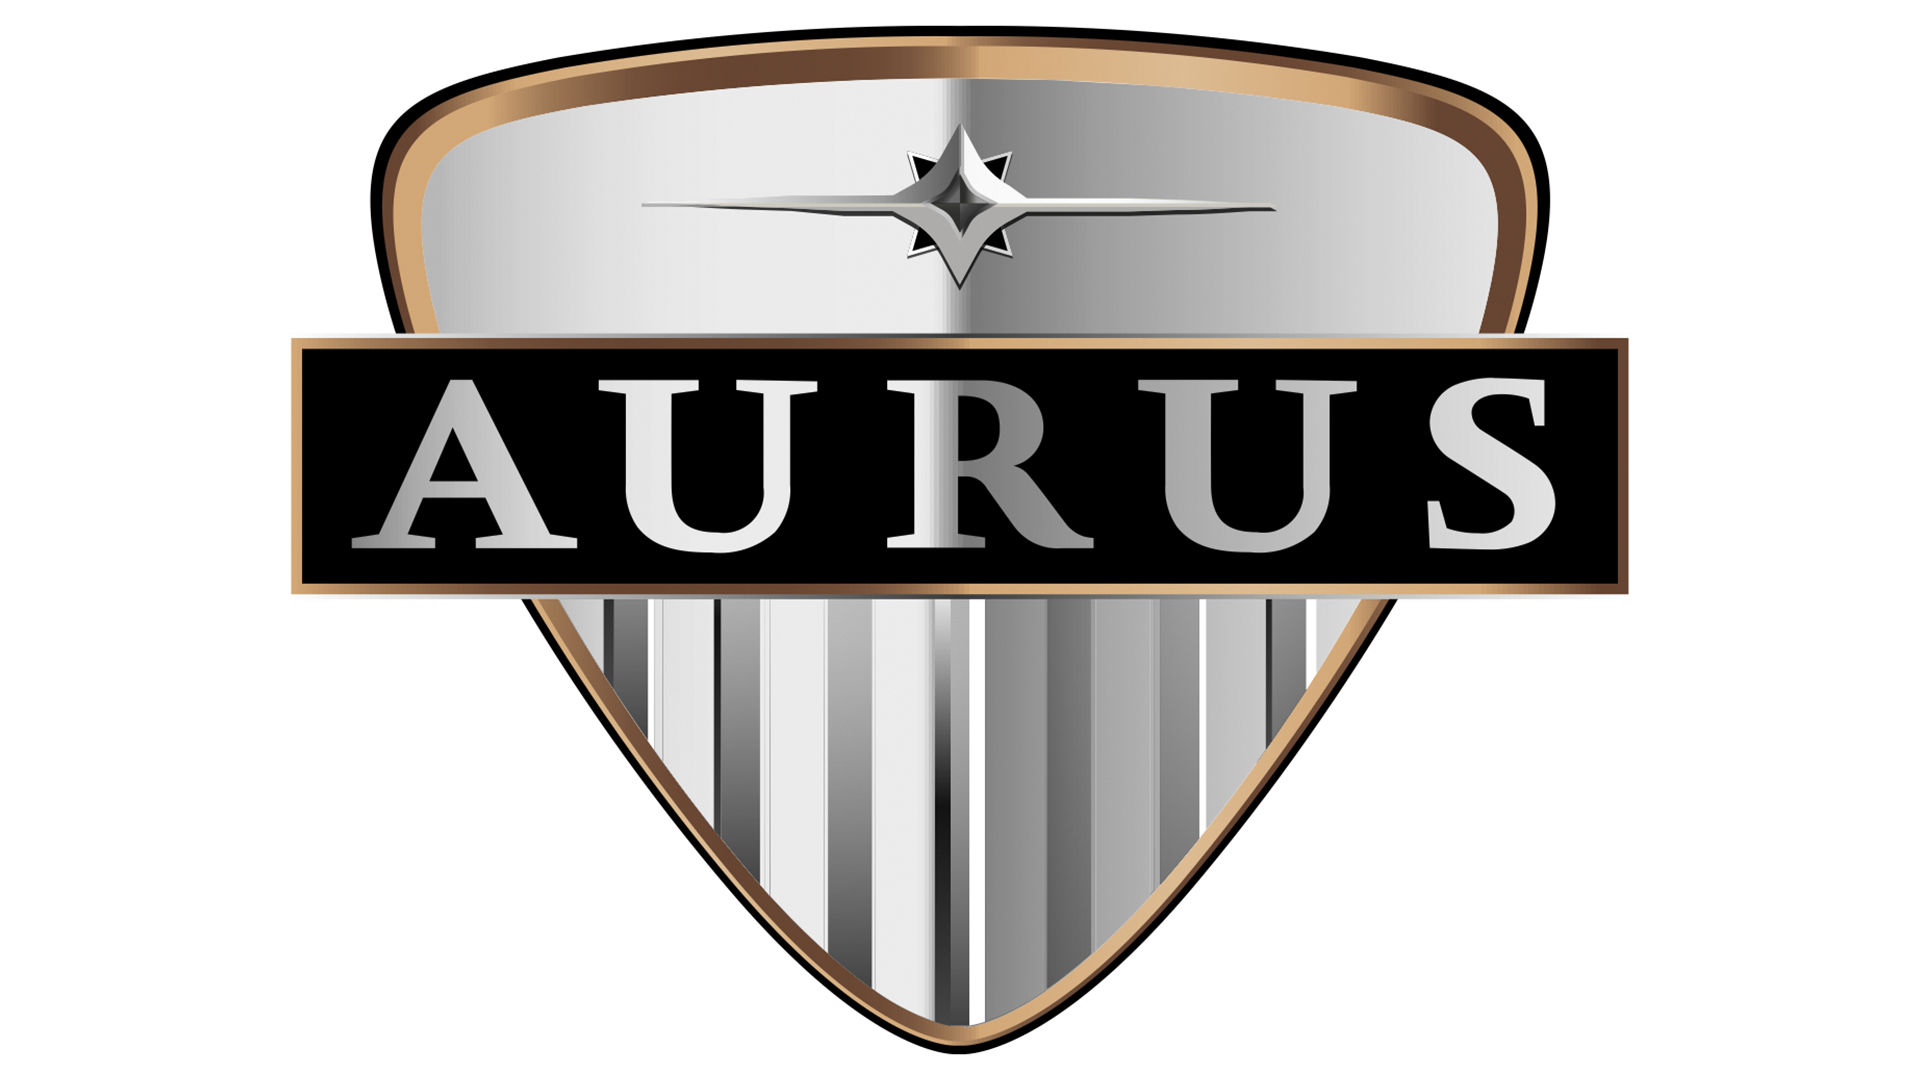 Aurus станет выпускать климатическую технику